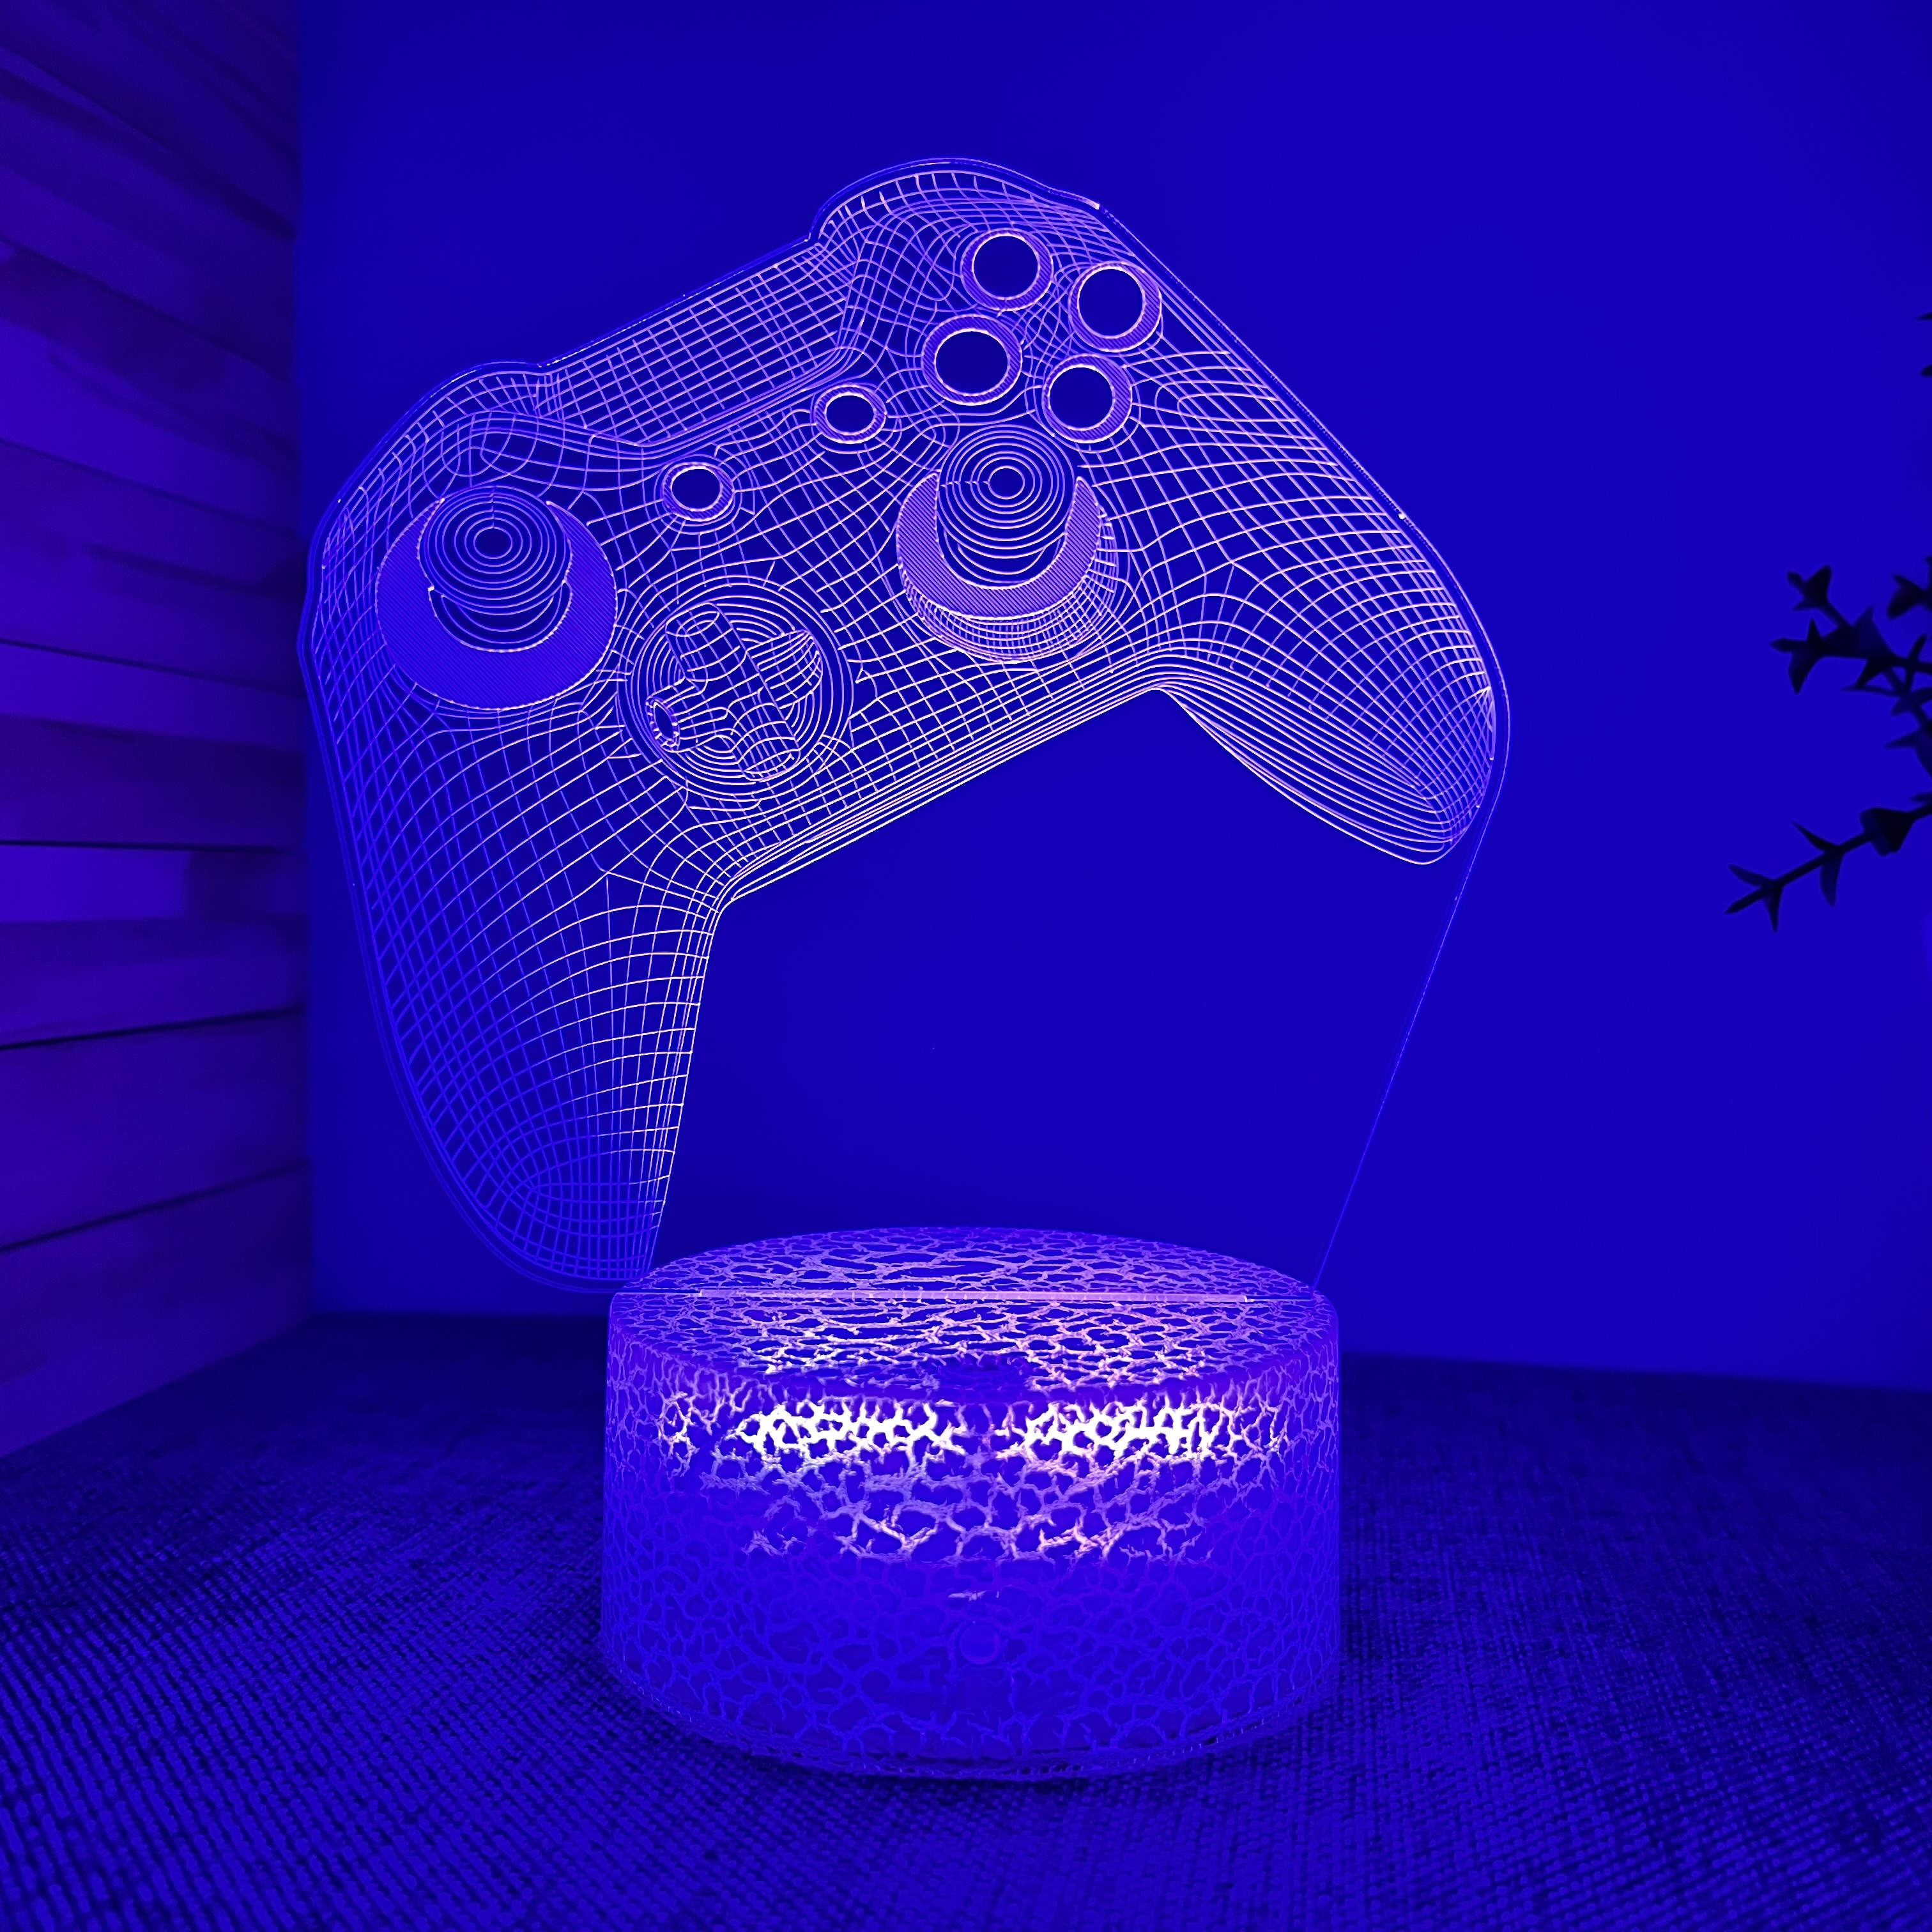 1pc Gaming Night Light, Décoration De Chambre De Joueur Pour Garçons, Lampe  D'illusion 3D Avec